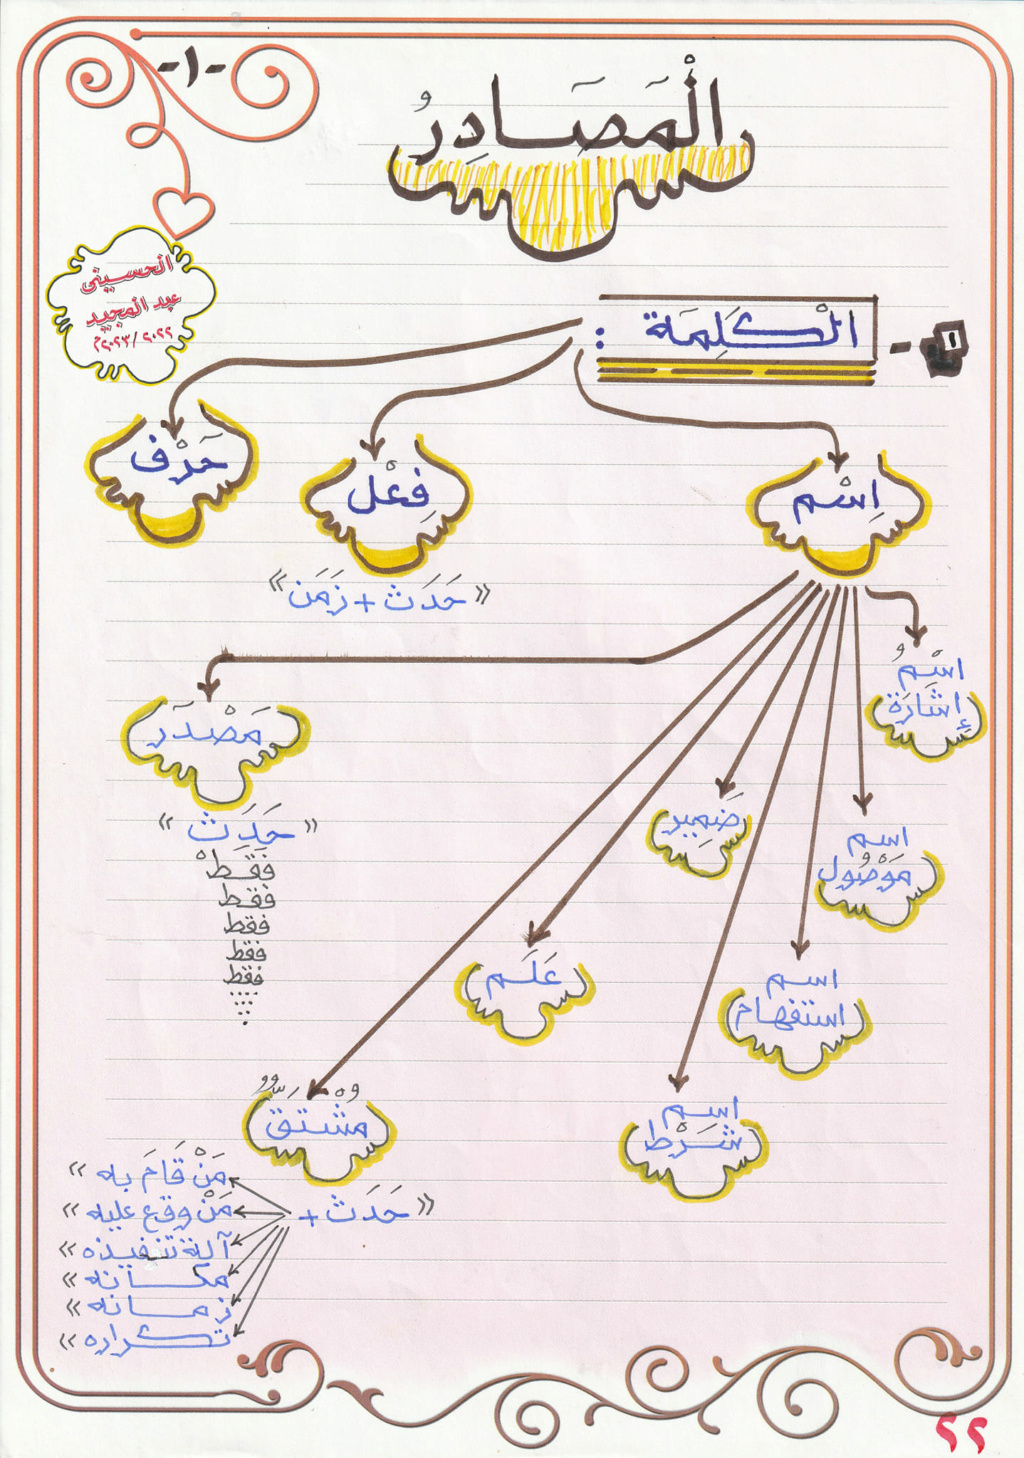  أنواع المصادر  (انفوجراف) أ/ الحسيني عبدالمجيد 198